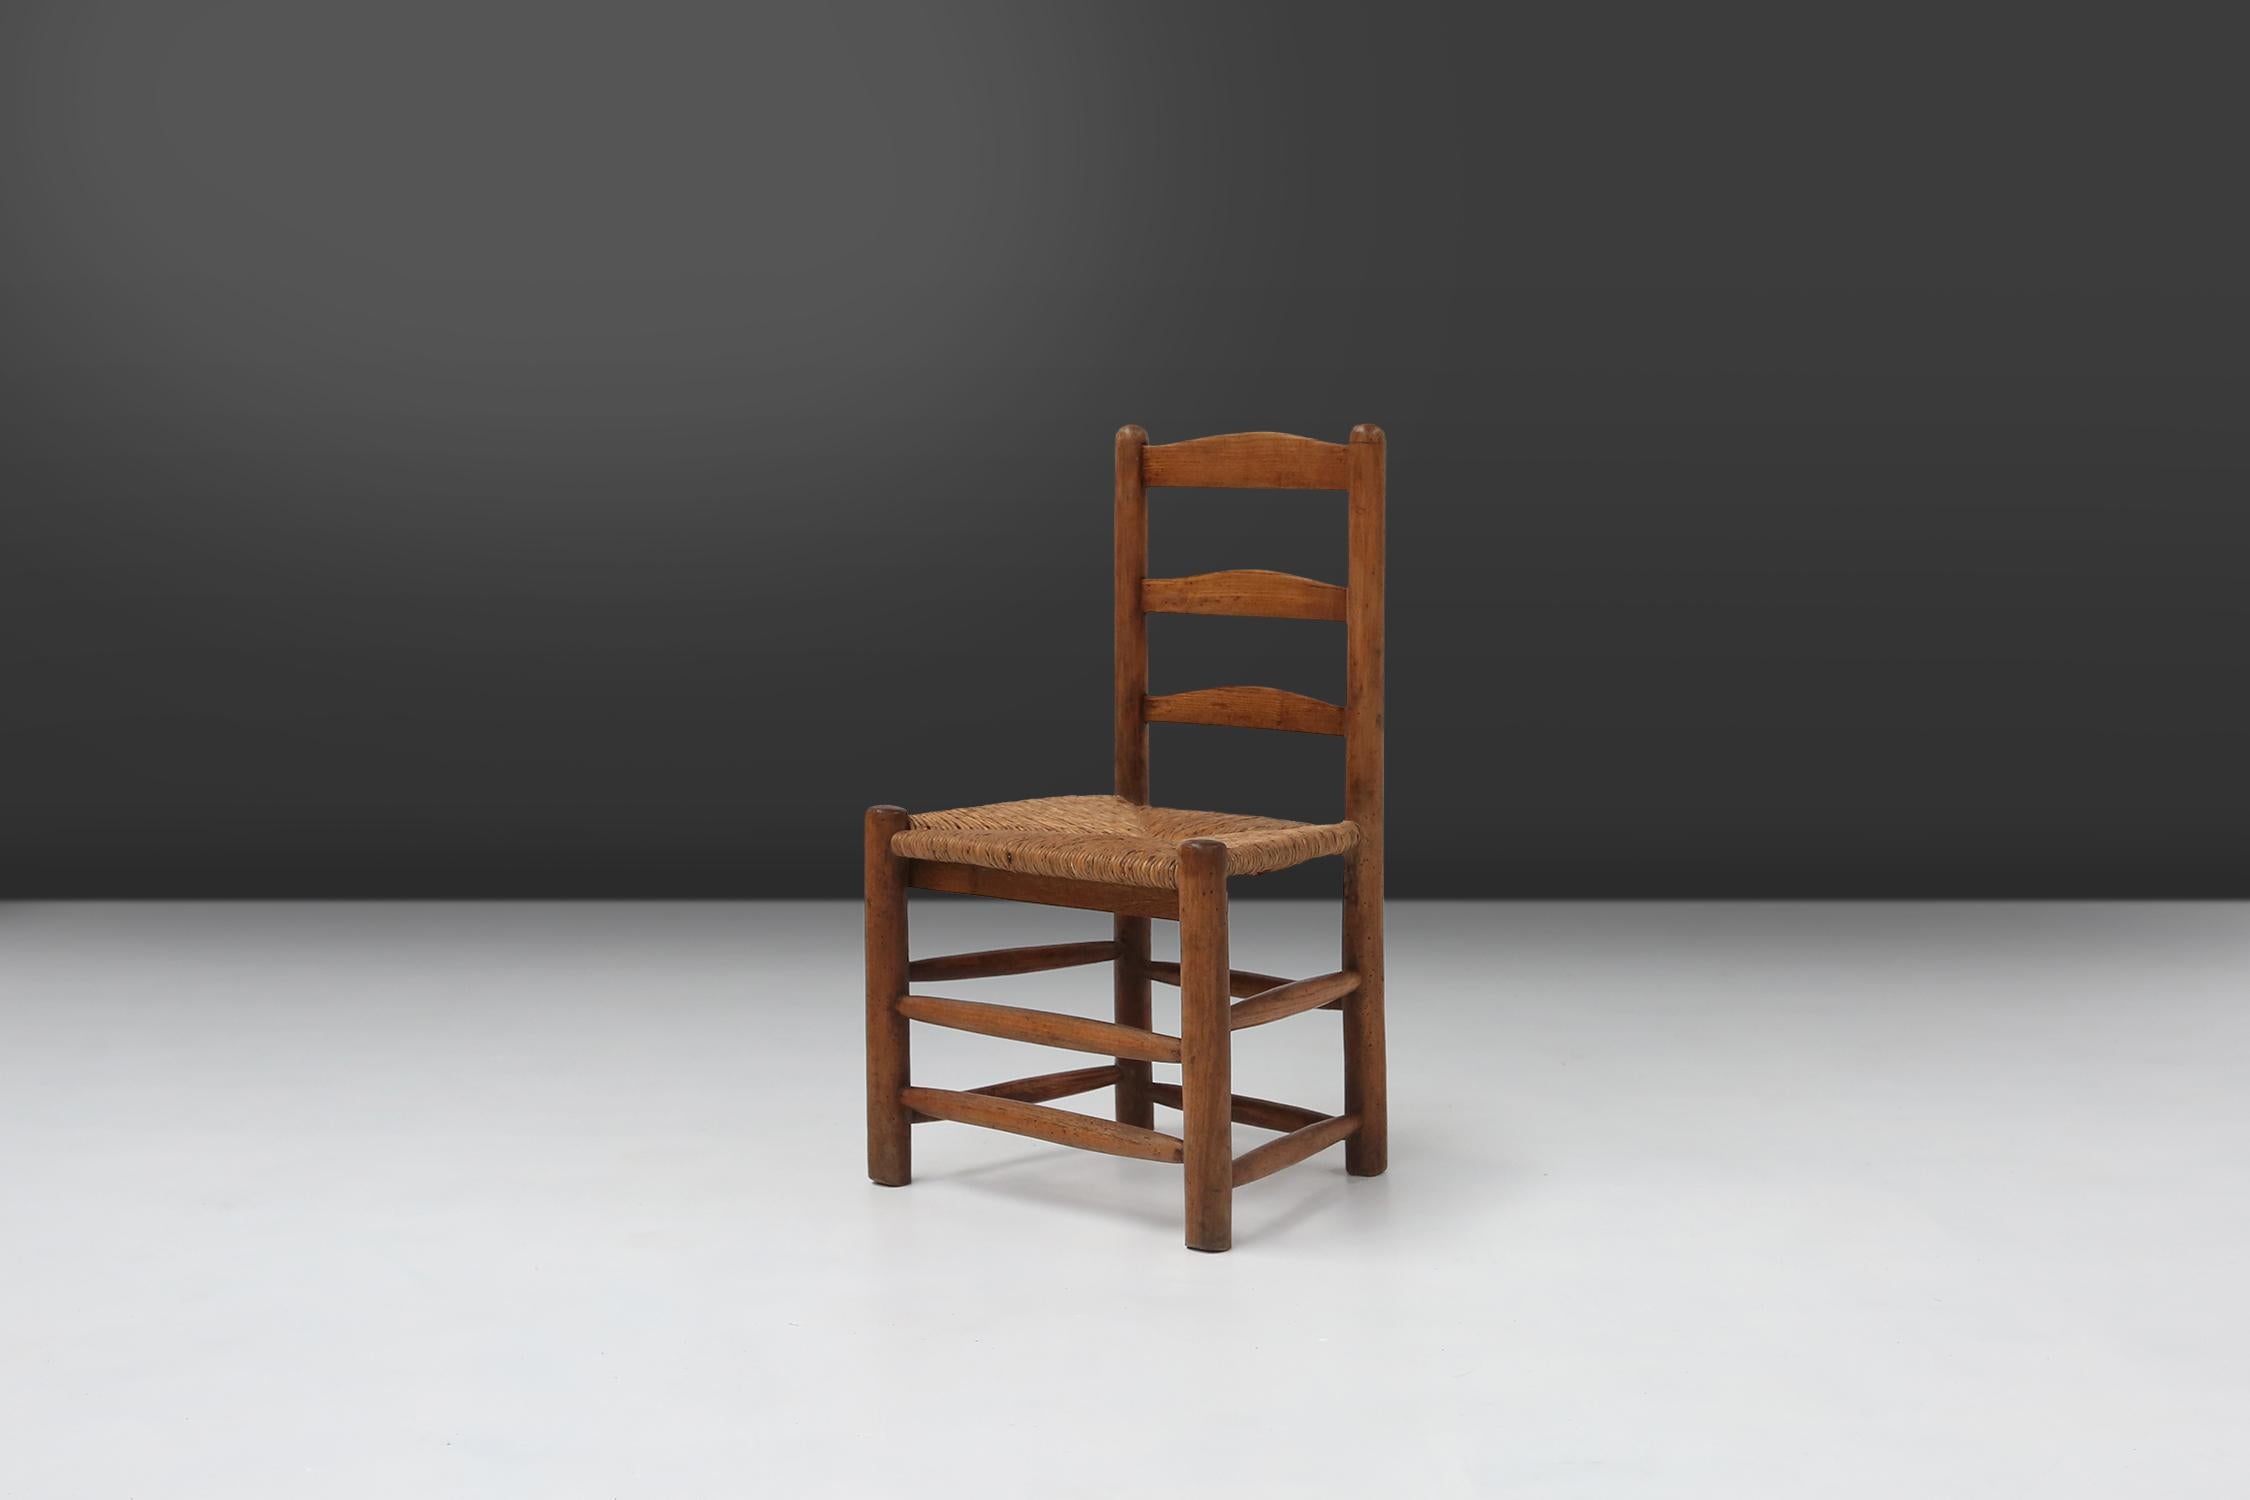 Chaise rustique en bois fabriquée vers 1850 en France. Cette chaise de style Wabi-Sabi a une belle patine et est parfaite comme chaise d'appoint dans n'importe quel intérieur.
Fabriqué en bois massif et siège en rotin.
